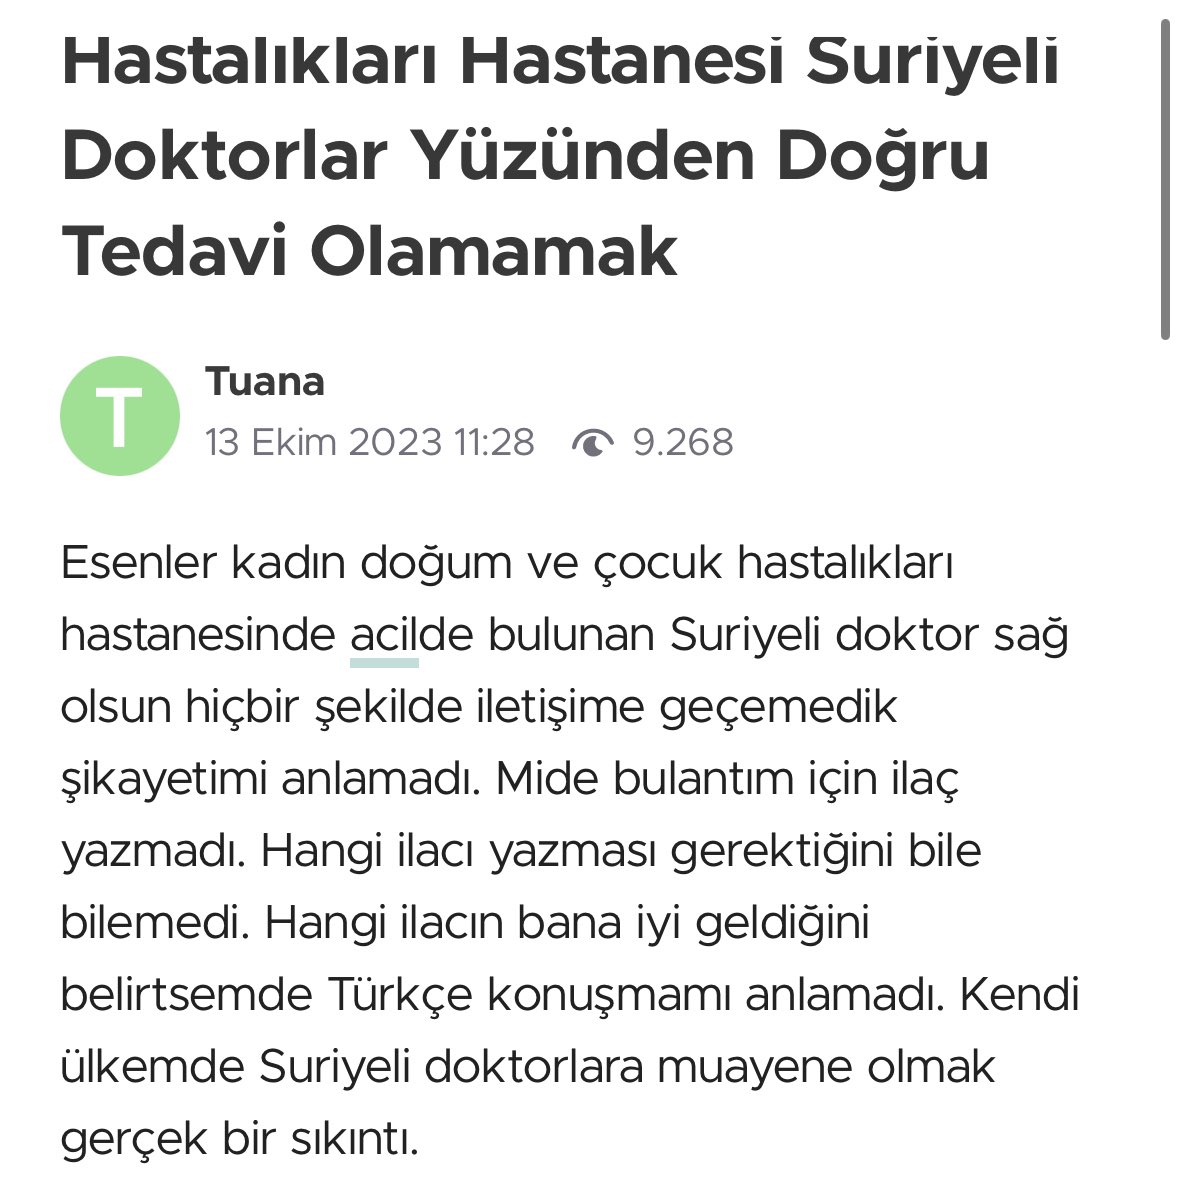 Olaya bak. Suriyeli doktorlar Türkiyede çalışıyor onu geçtim dil bilmiyor onu da geçtim biz onlarla iletişim kurmaya çalışıyoruz.